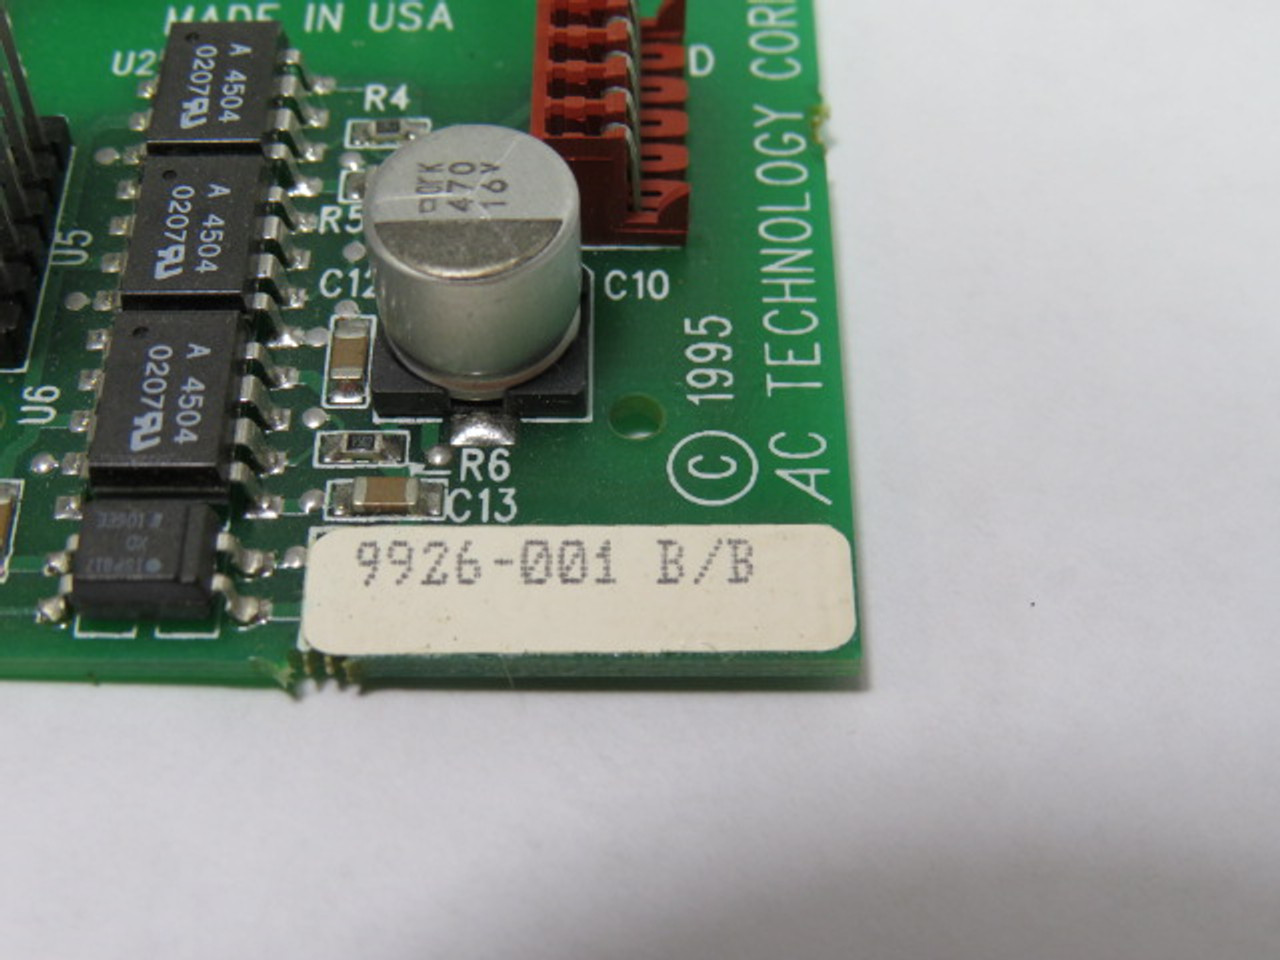 AC Technology 9926-001B/B Input / Output Board ! NOP !